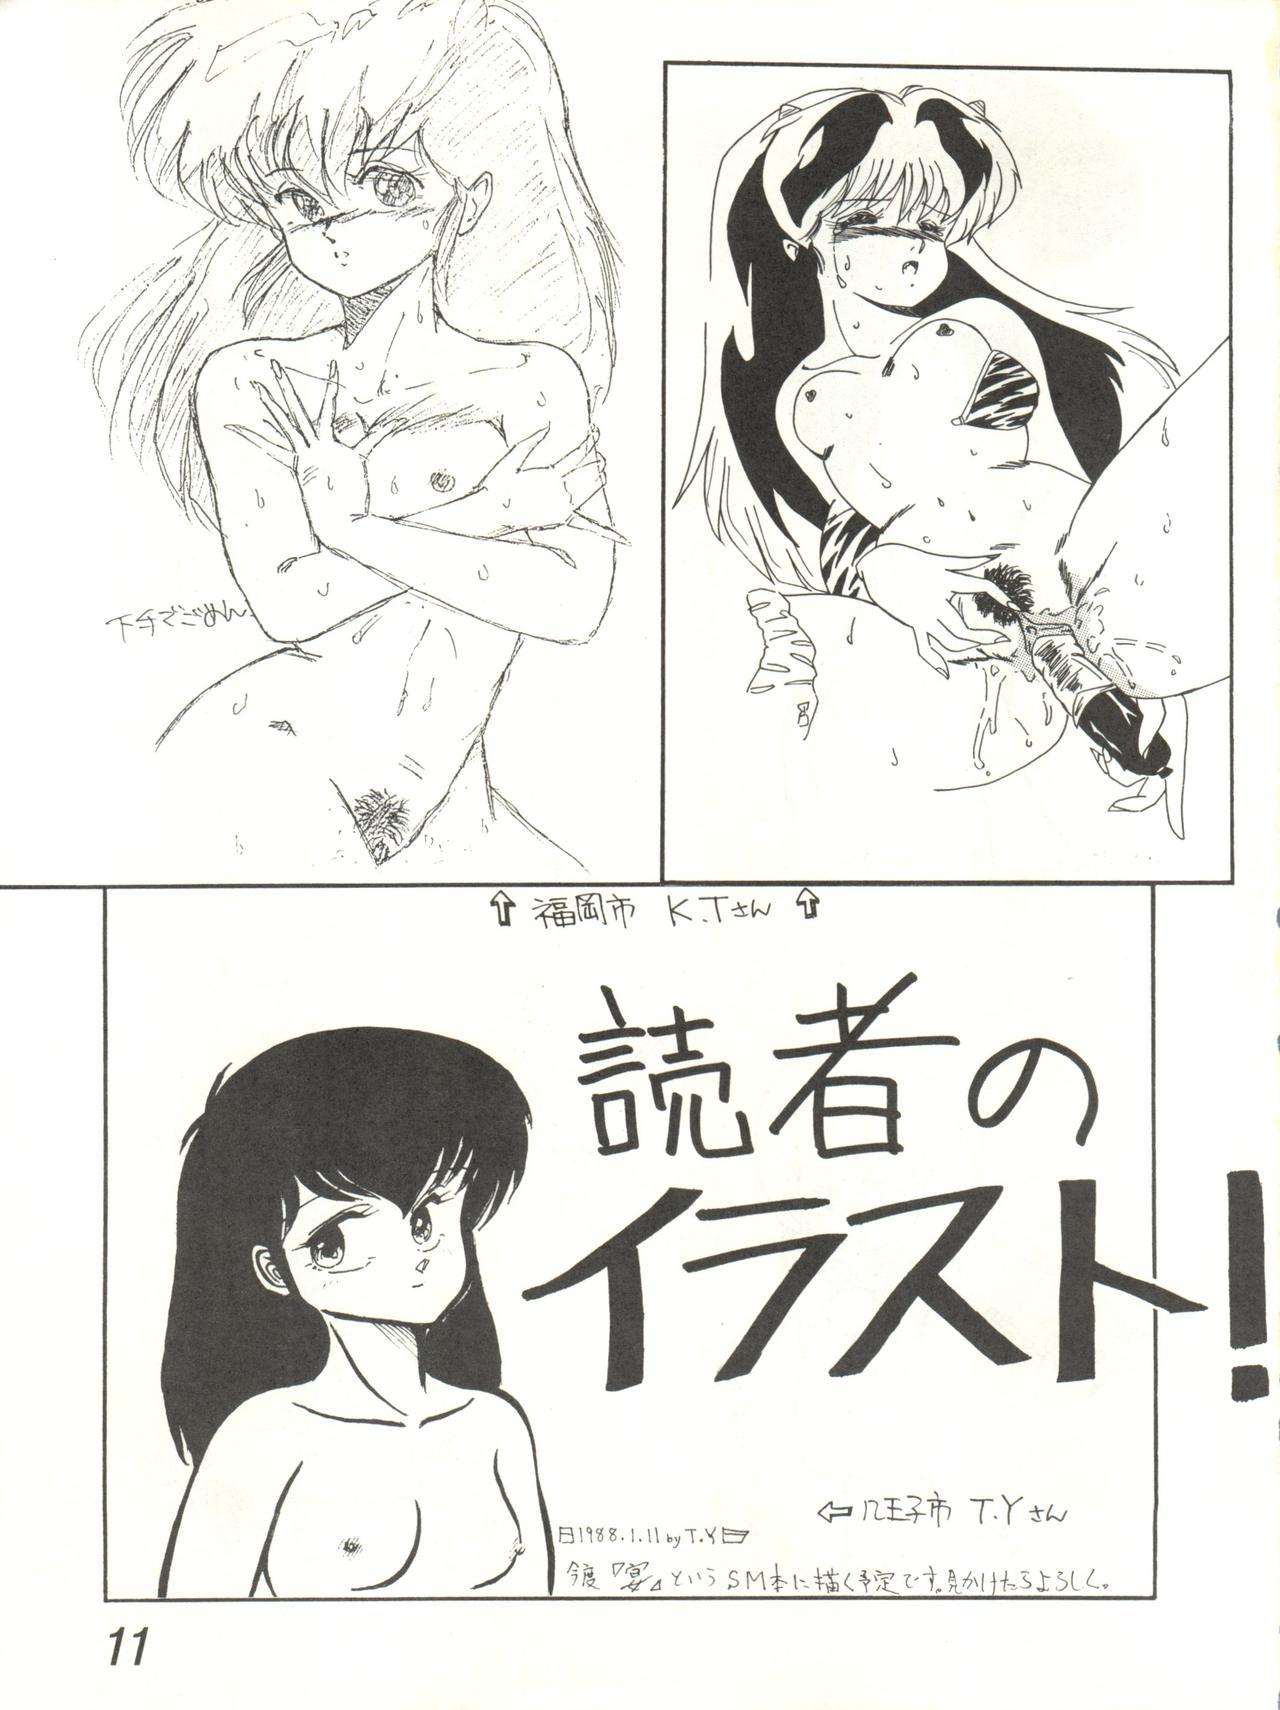 Woman Ikkoku-kan 0 Gou Shitsu Part V - Maison ikkoku Prostituta - Page 11